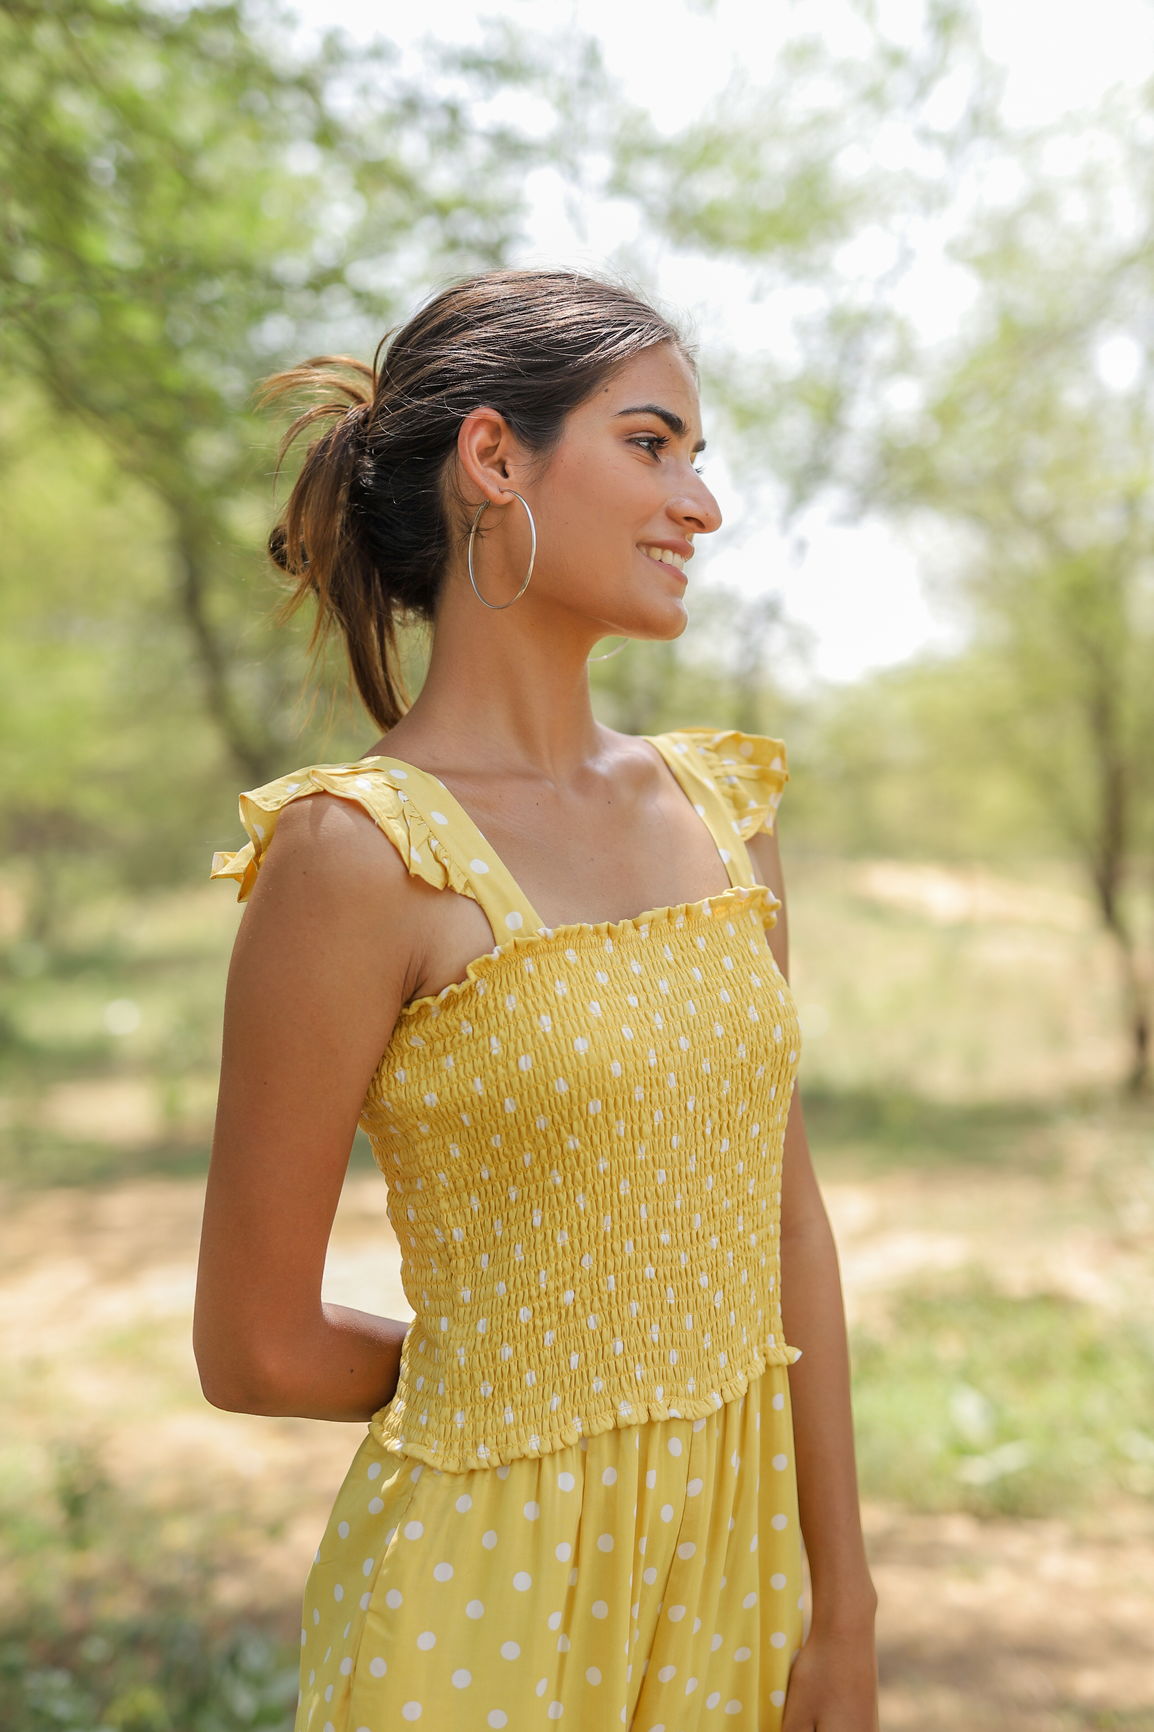 Little Girls Yellow Polka Dot Dresses Stock Photo 130561949 | Shutterstock